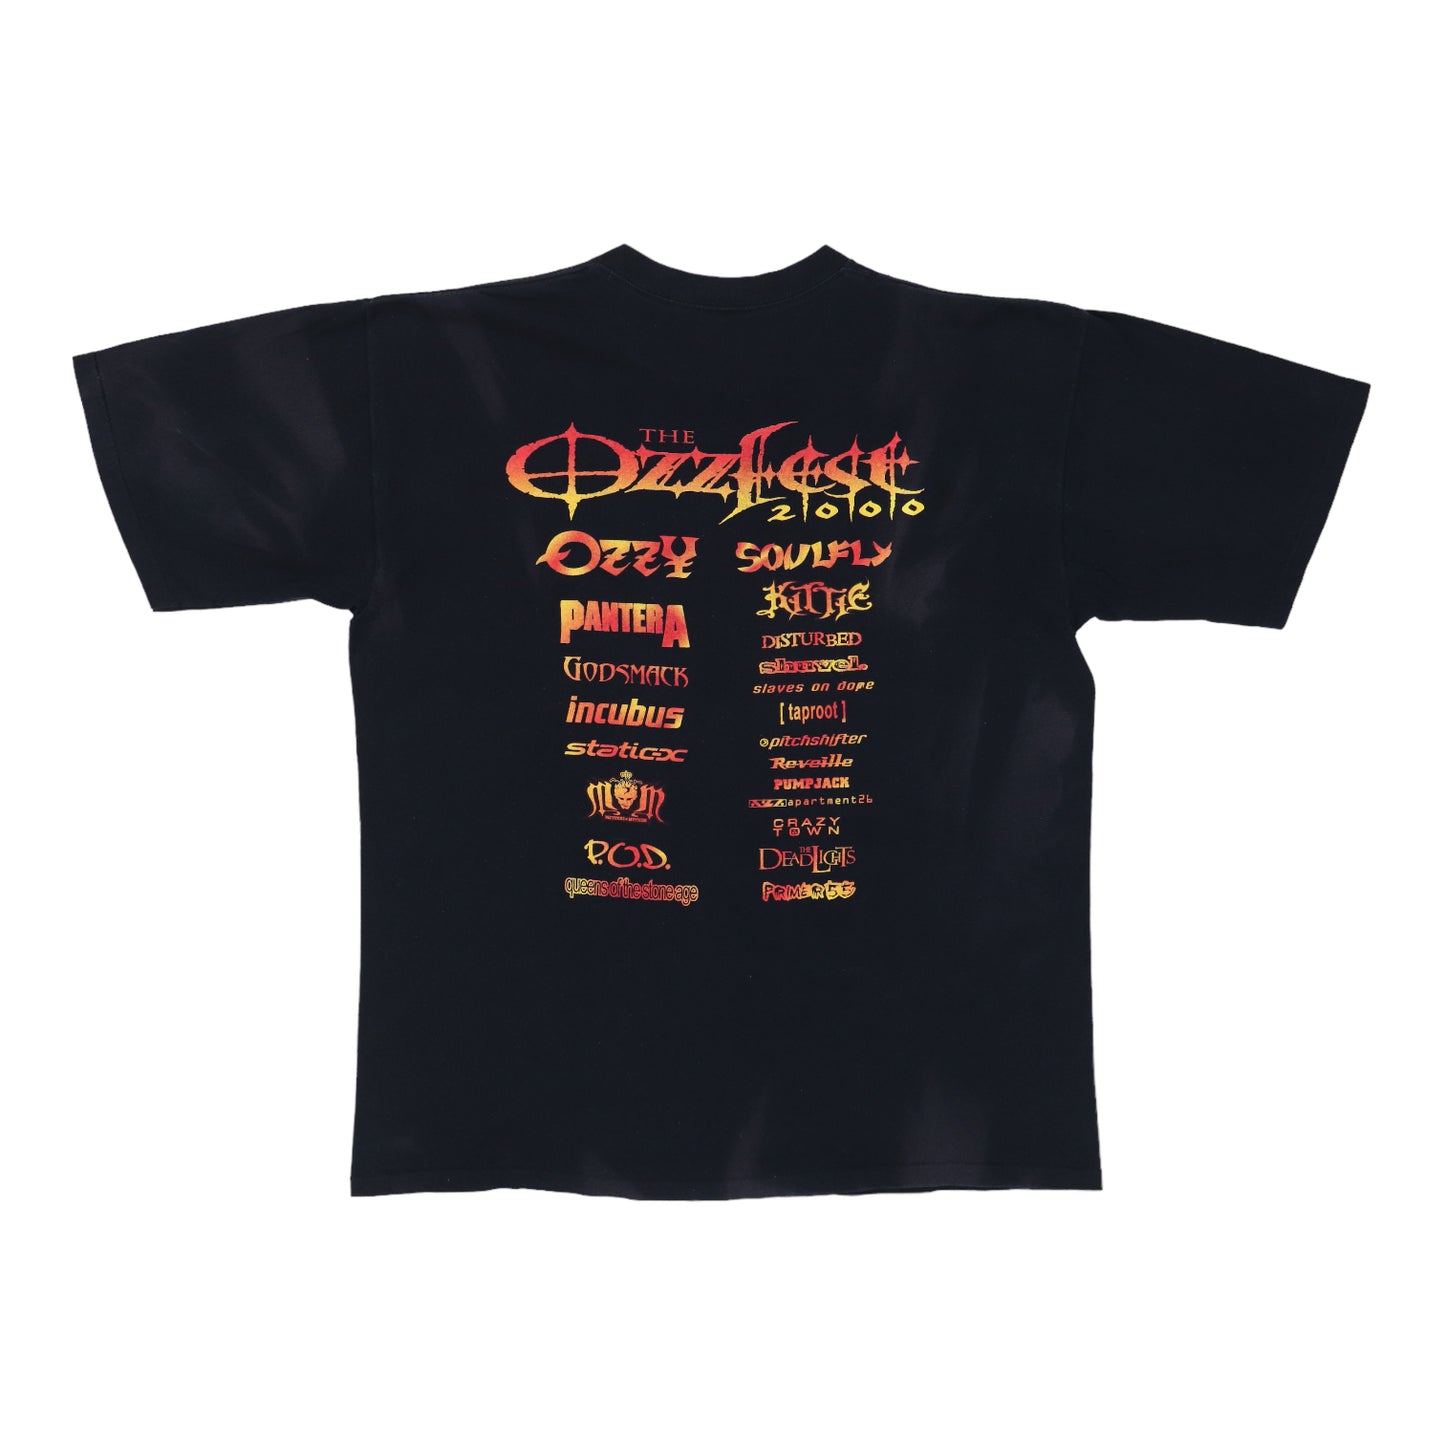 2000 Ozzfest Ozzy Osbourne Tour Shirt